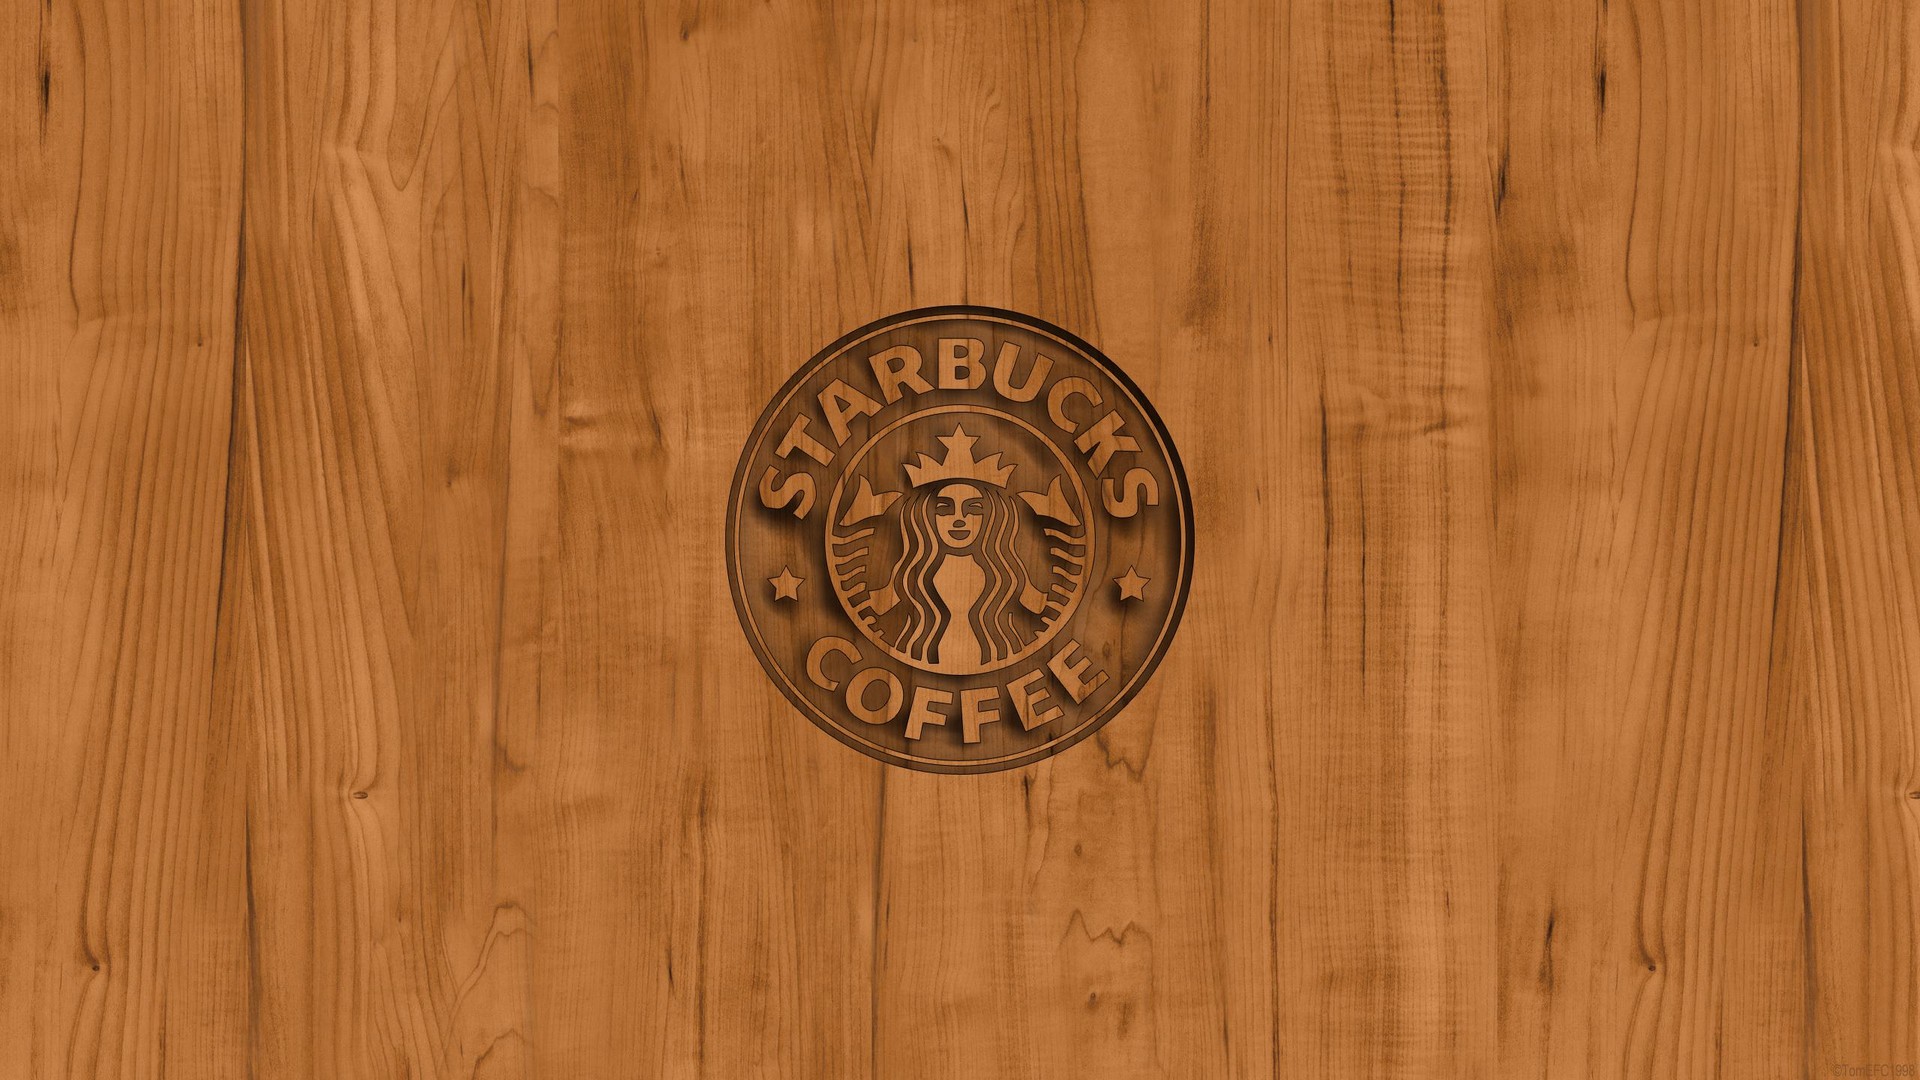 Starbucks Wood - HD Wallpaper 